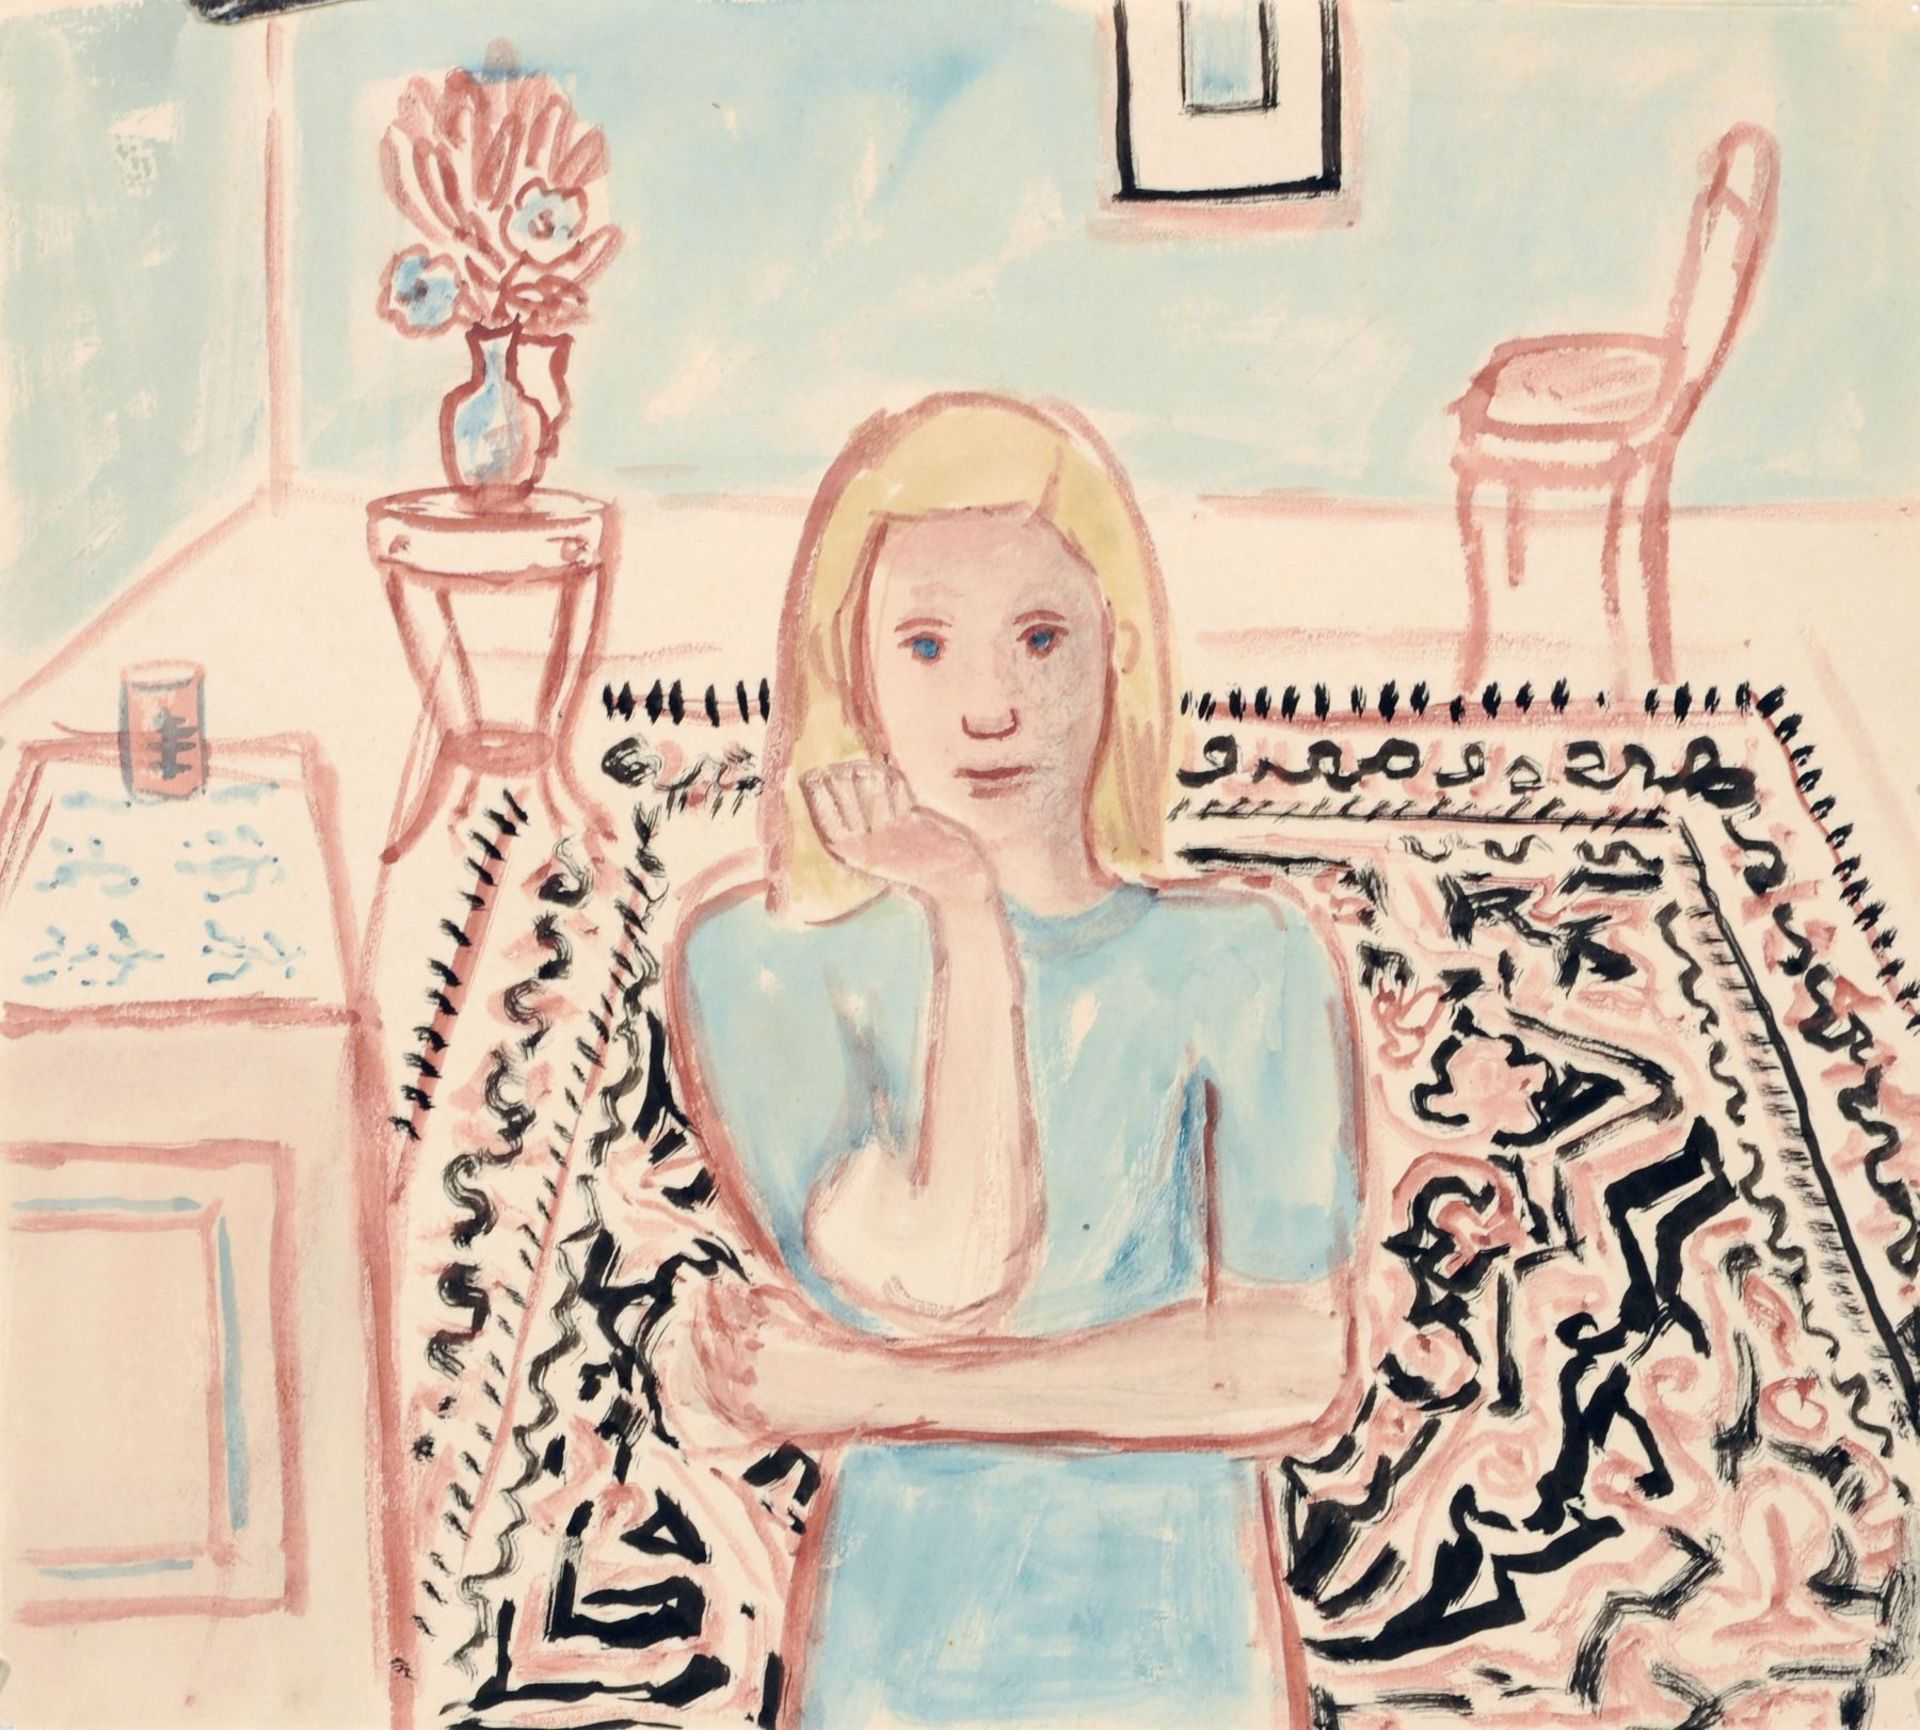 Elisabeth Ahnert, Interieur mit Mädchen, den Arm aufgestützt. Wohl späte 1950er Jahre. Aquarell